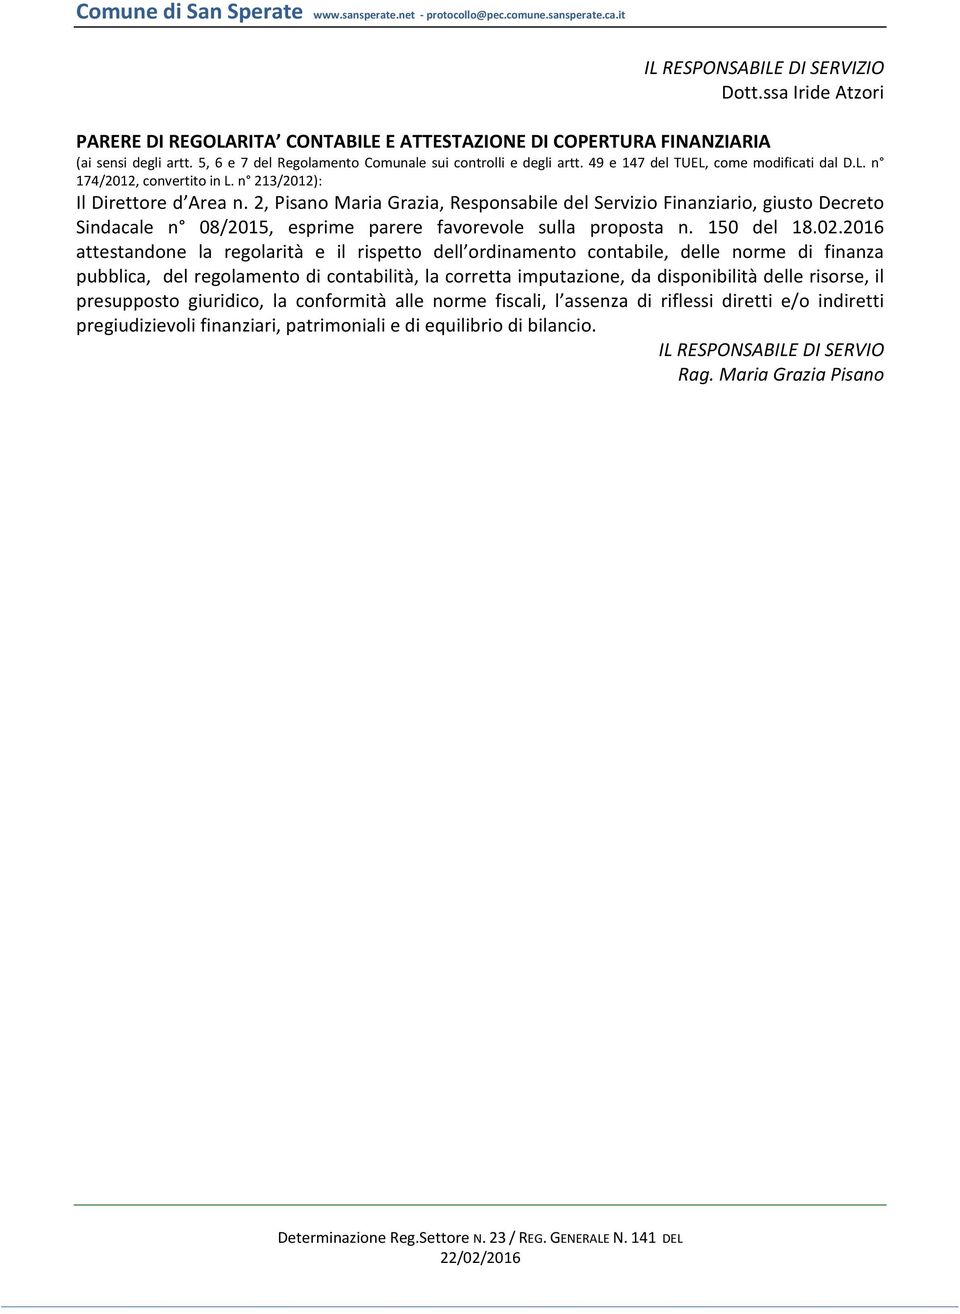 2, Pisano Maria Grazia, Responsabile del Servizio Finanziario, giusto Decreto Sindacale n 08/2015, esprime parere favorevole sulla proposta n. 150 del 18.02.